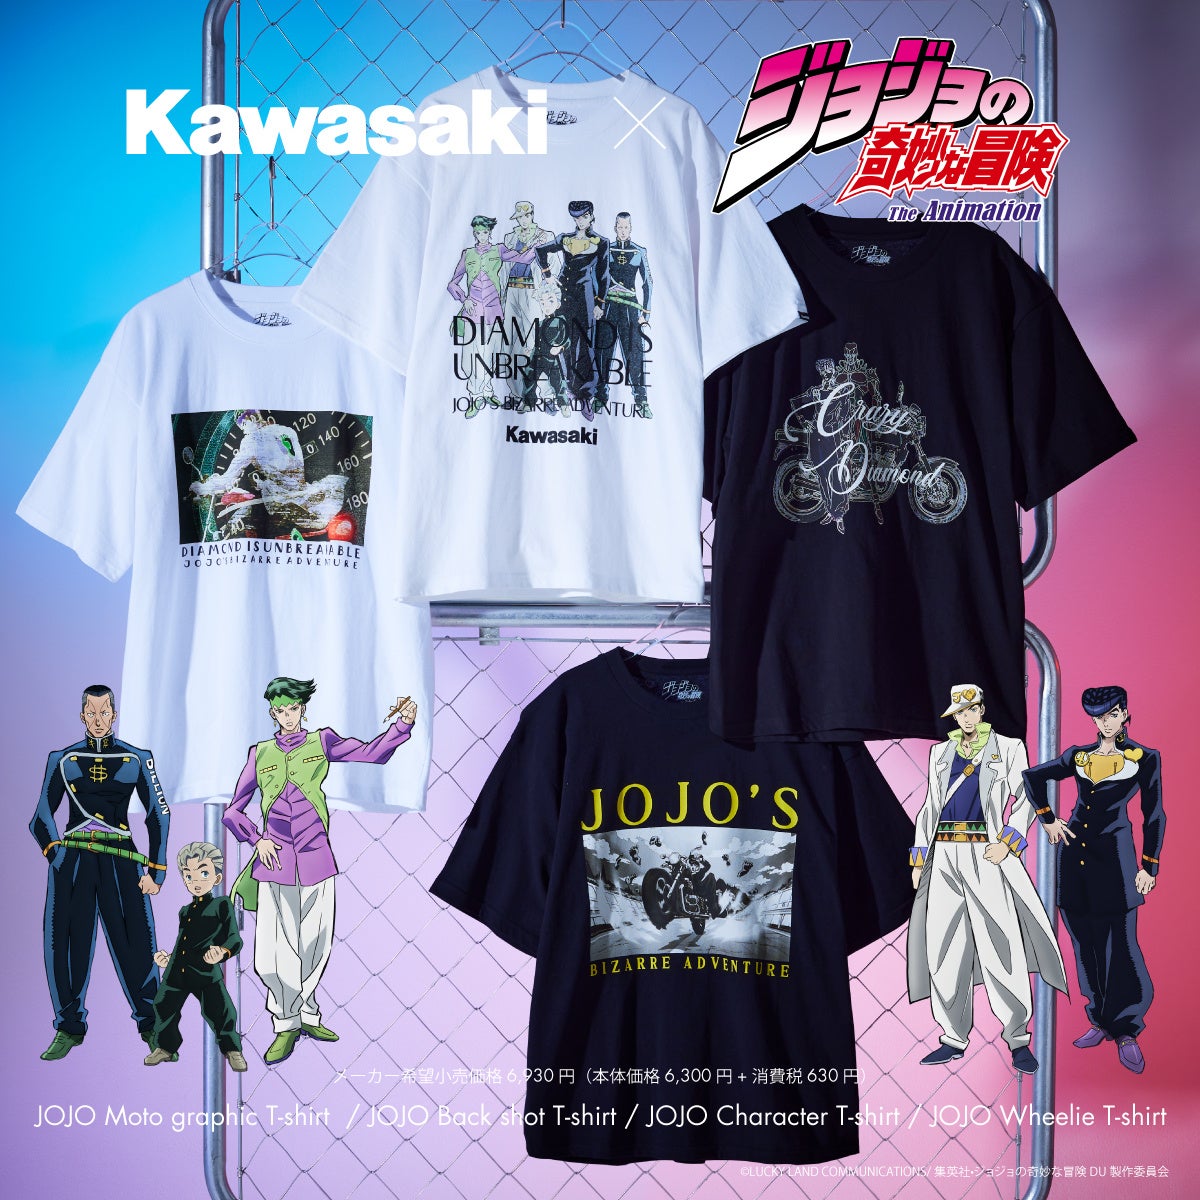 アニメ『ジョジョの奇妙な冒険 ダイヤモンドは砕けない』 ×KawasakiのコラボレーションTシャツが全国のカワサキプラザで発売開始！